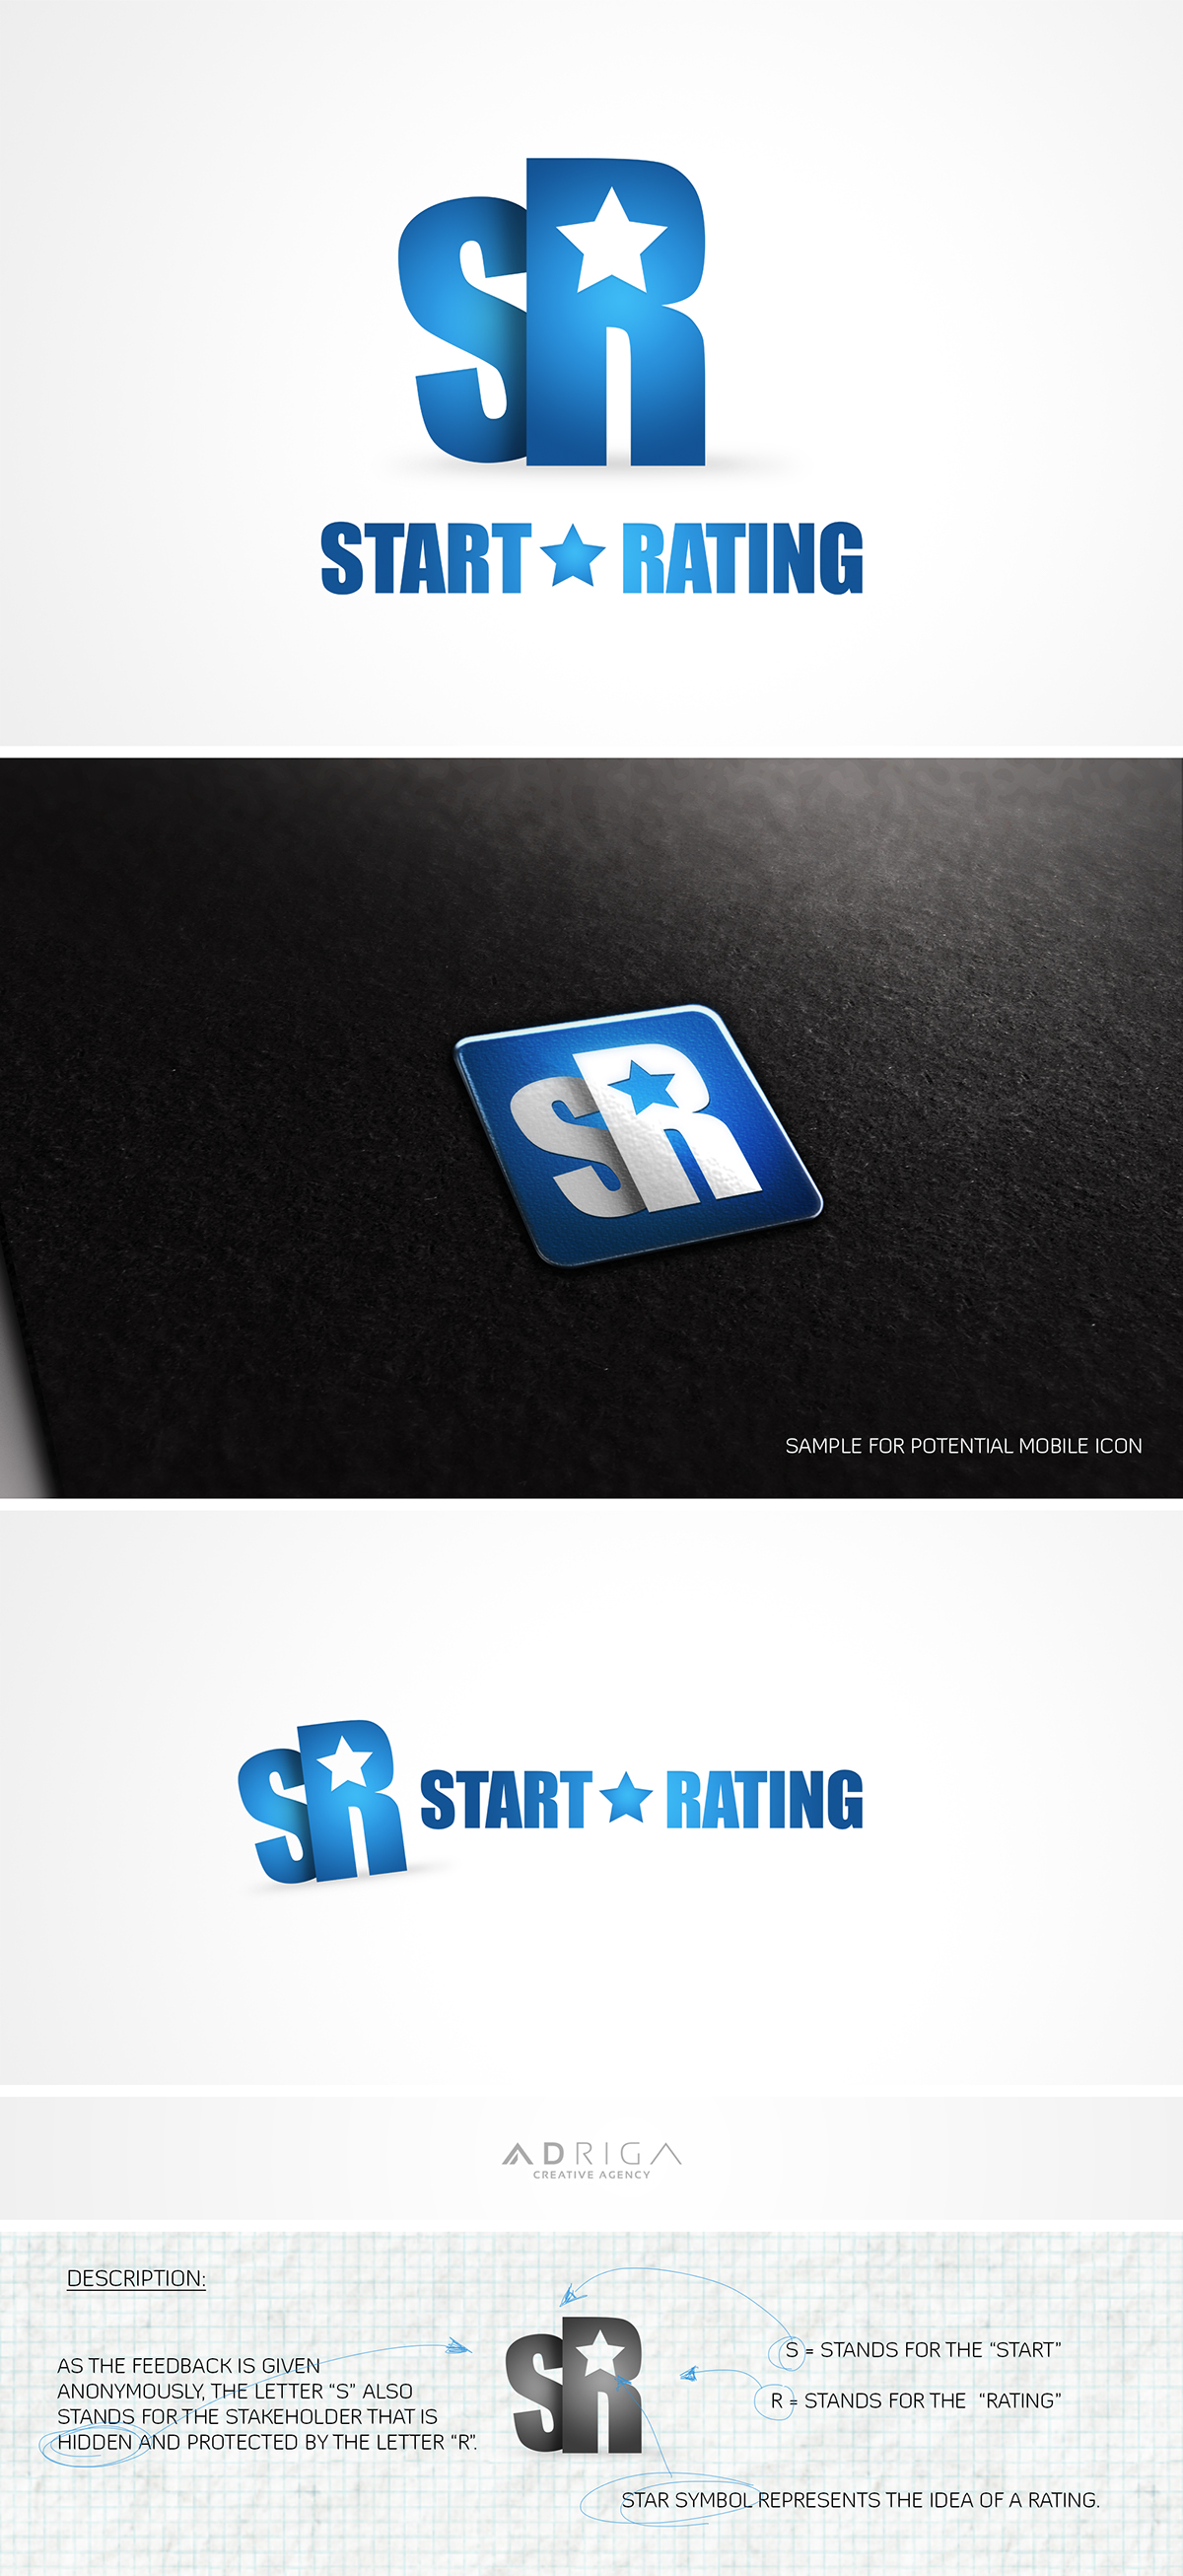 Logo Design stars star rating branding 